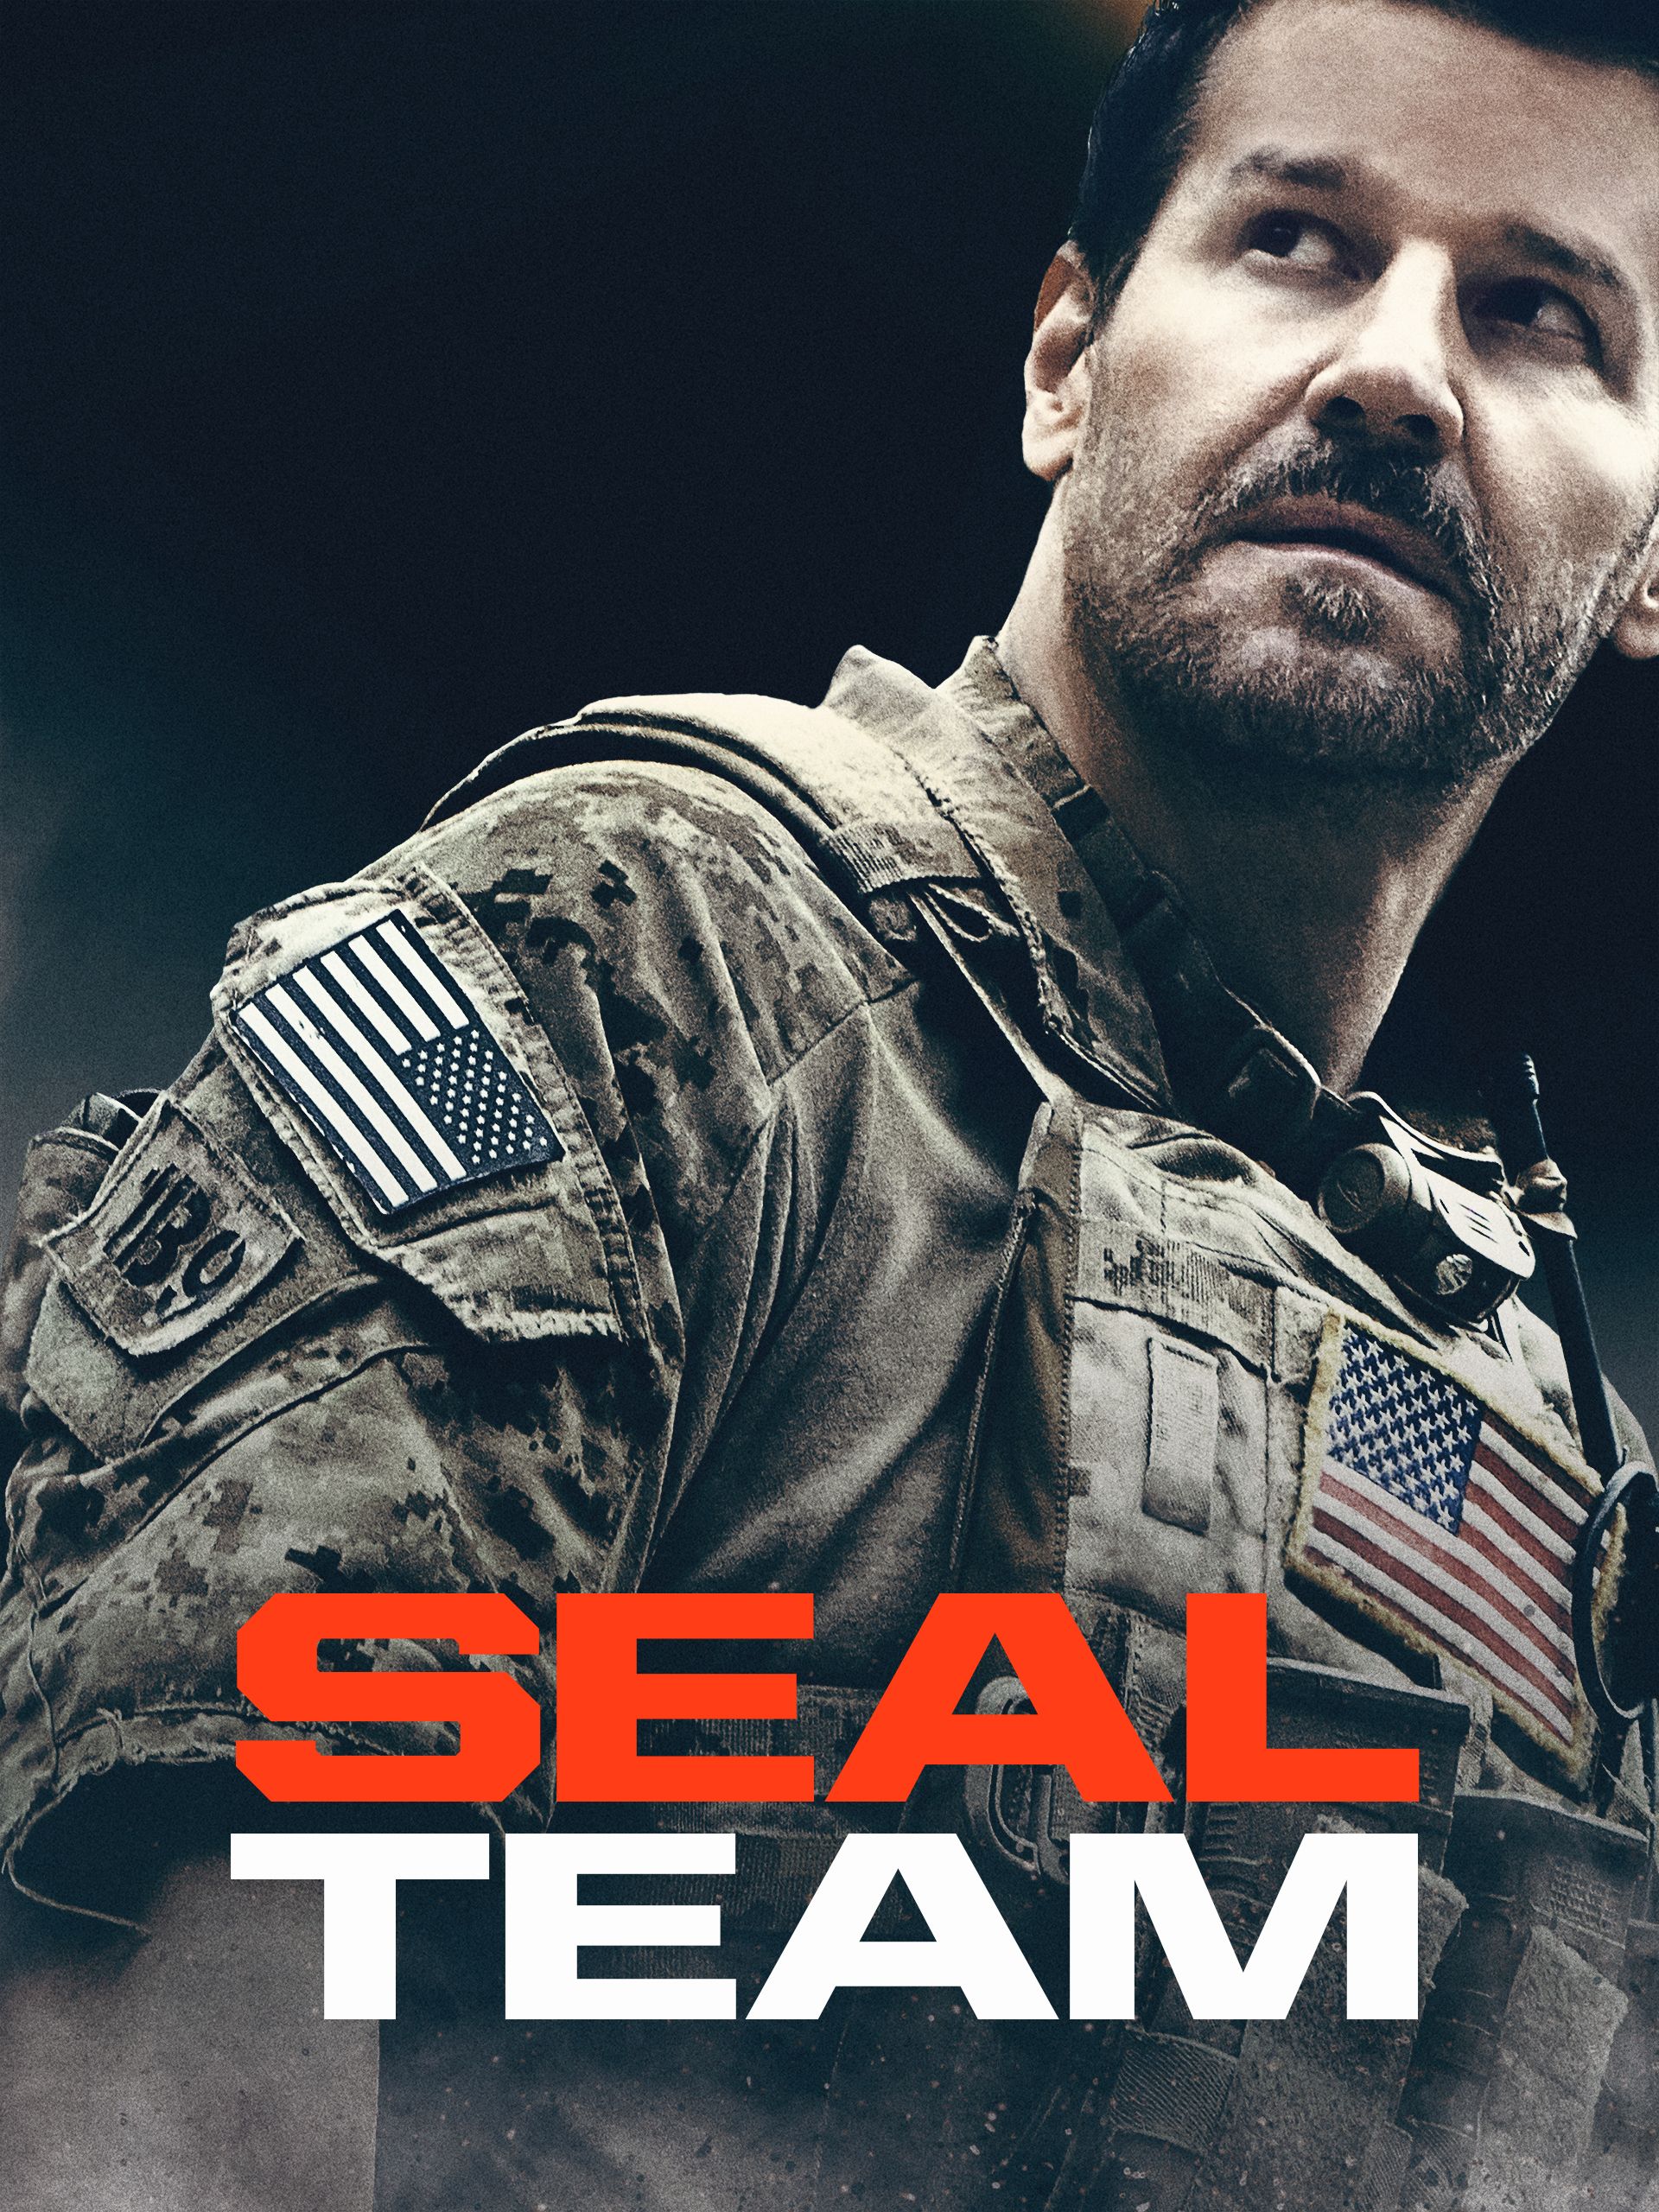 Seal Team : Seal Team Six Spades Models Sm12001 2014 - Seal team es una ...